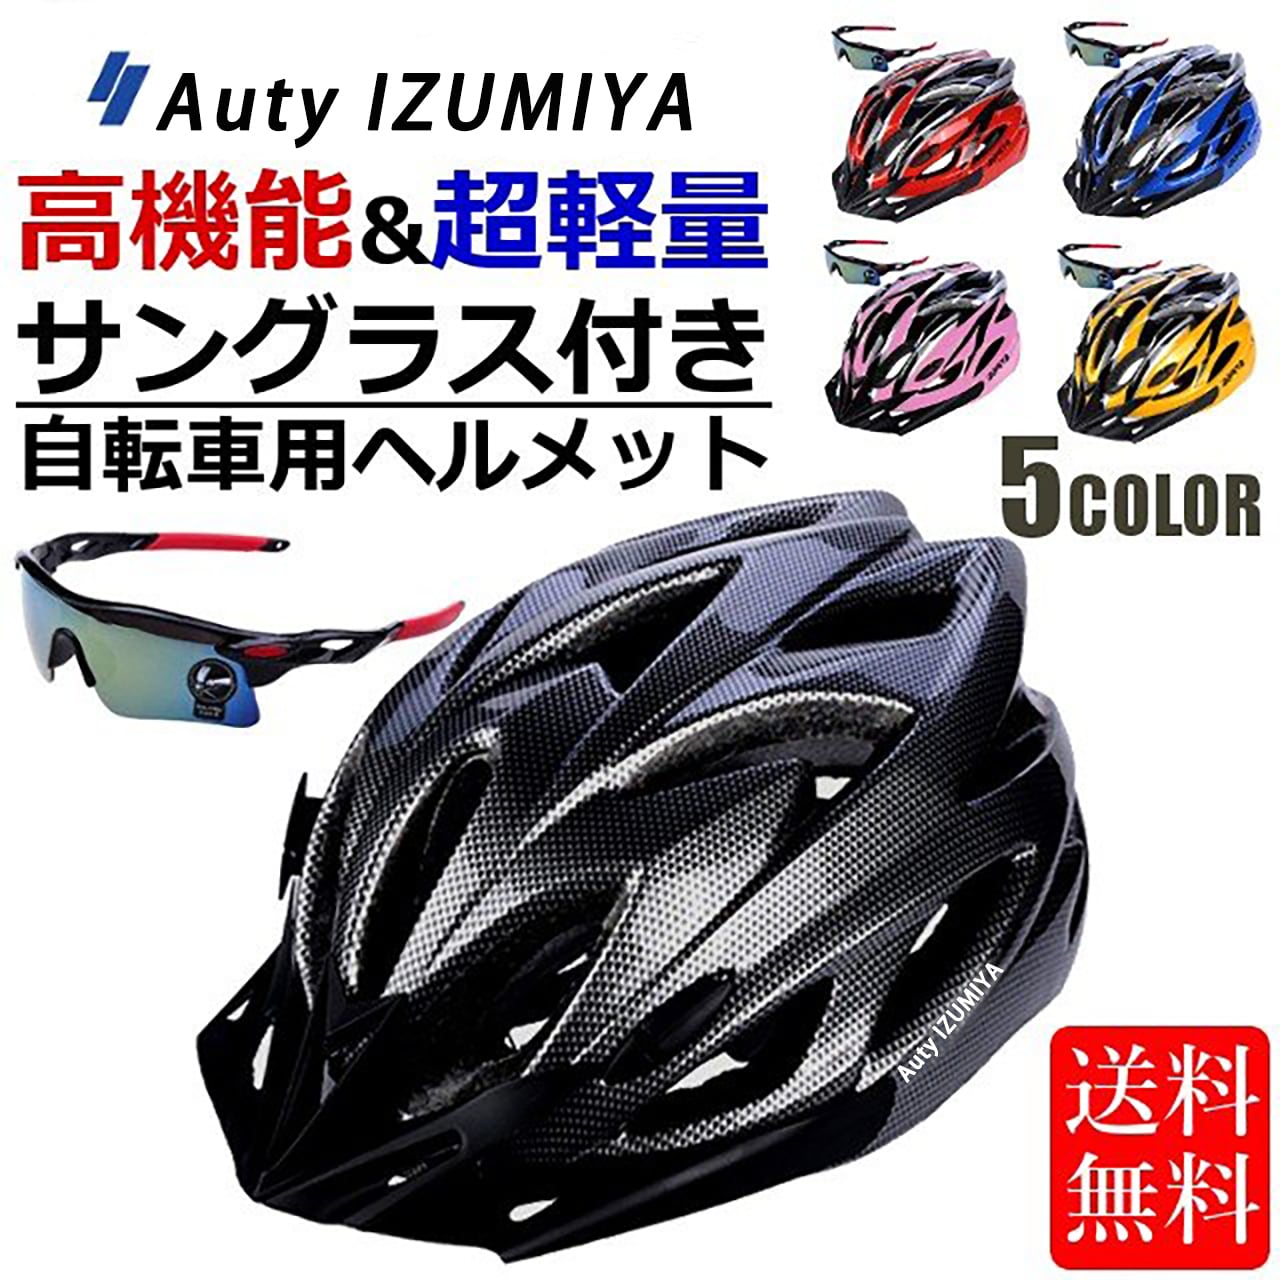 Auty IZUMIYA 自転車 ヘルメット ロードバイク クロスバイク サイクリング 大人 超軽量 高剛性 大人用 サングラス セット